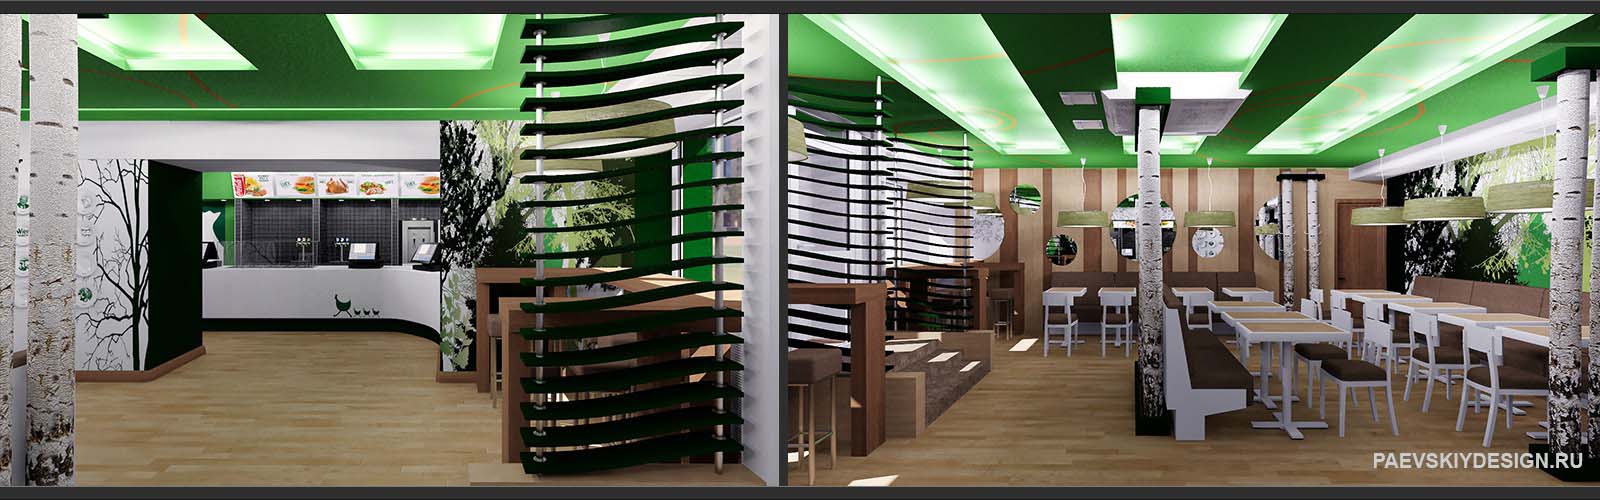 Дизайн проект интерьера кафе в современном стиле эко